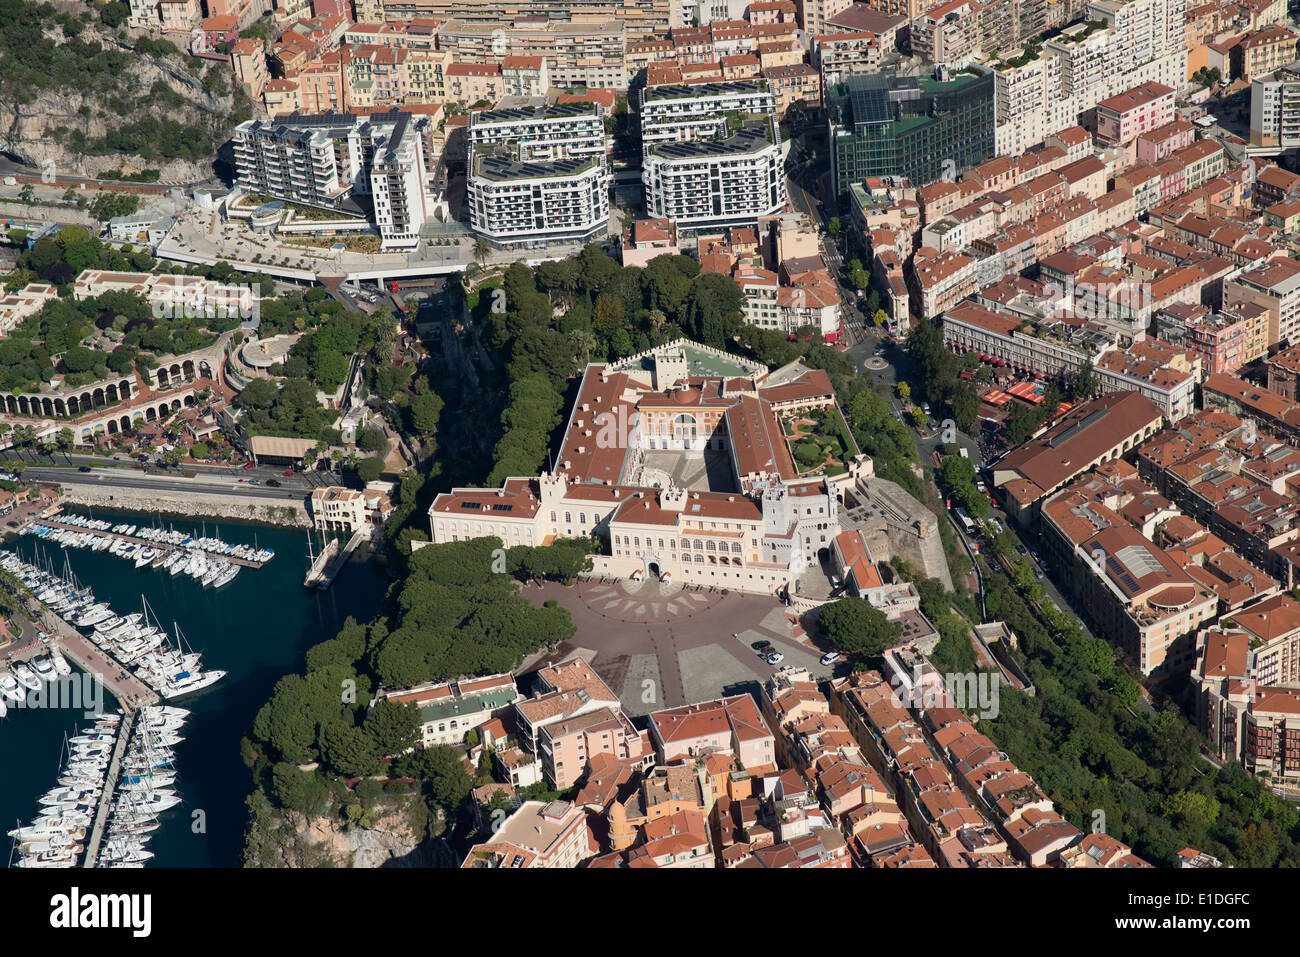 LUFTAUFNAHME. Prinzenpalast. Monaco-Ville (auch bekannt als The Rock), Fürstentum Monaco. Stockfoto